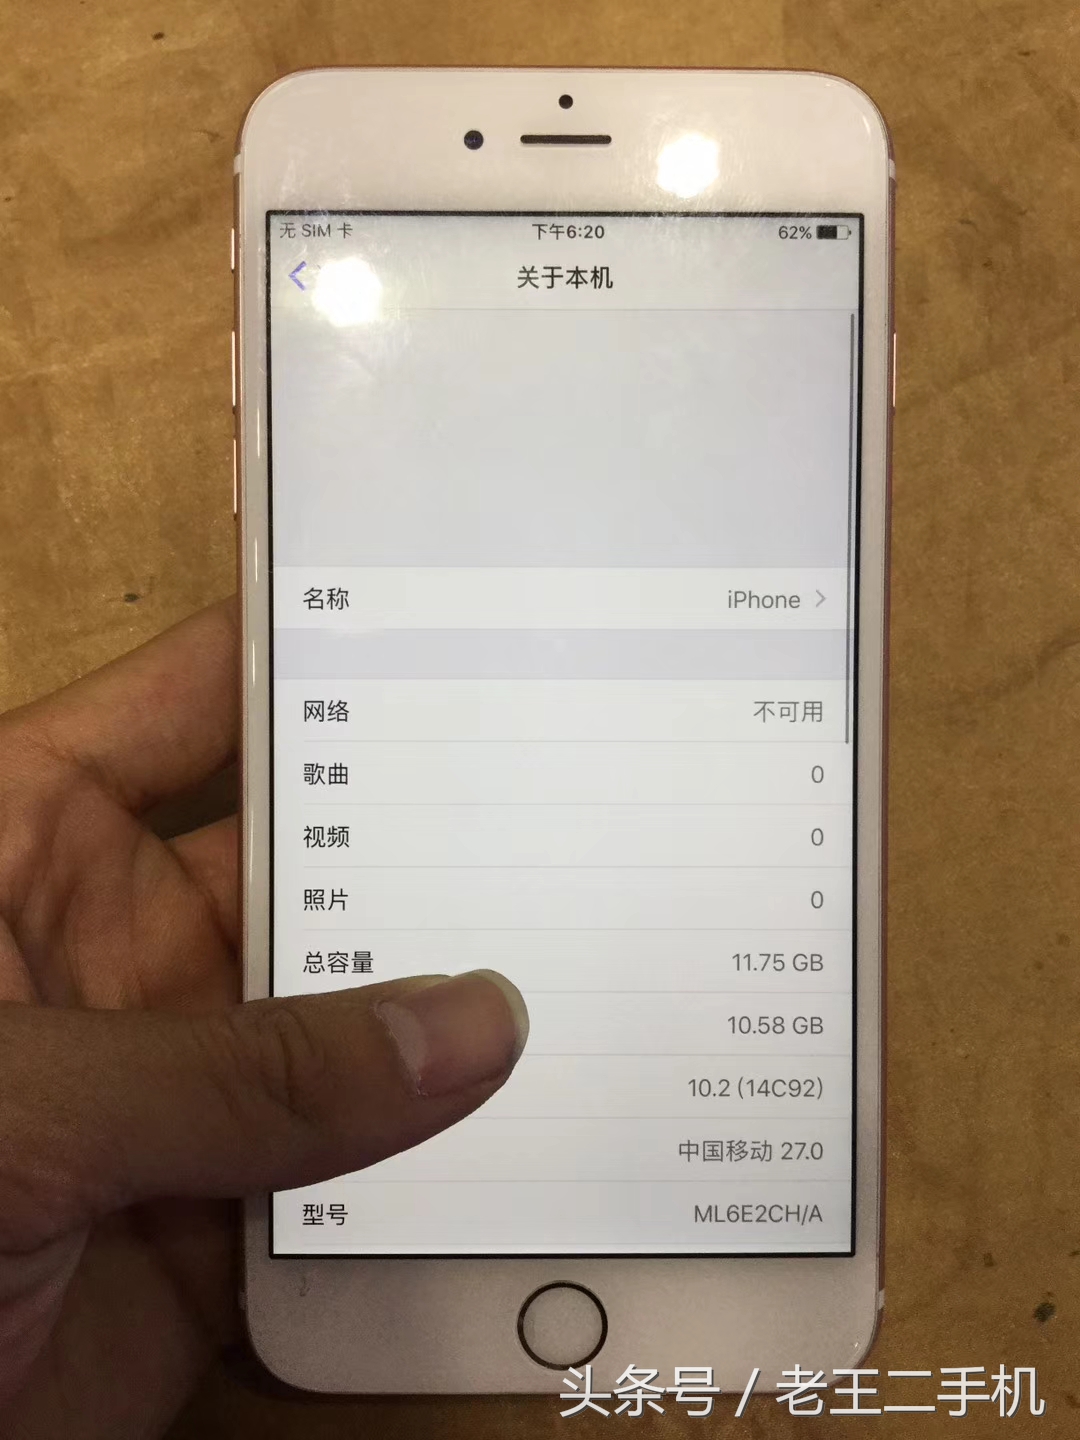 850元钱的6sp還是中国发行，怎么会那么划算，非安卓系统